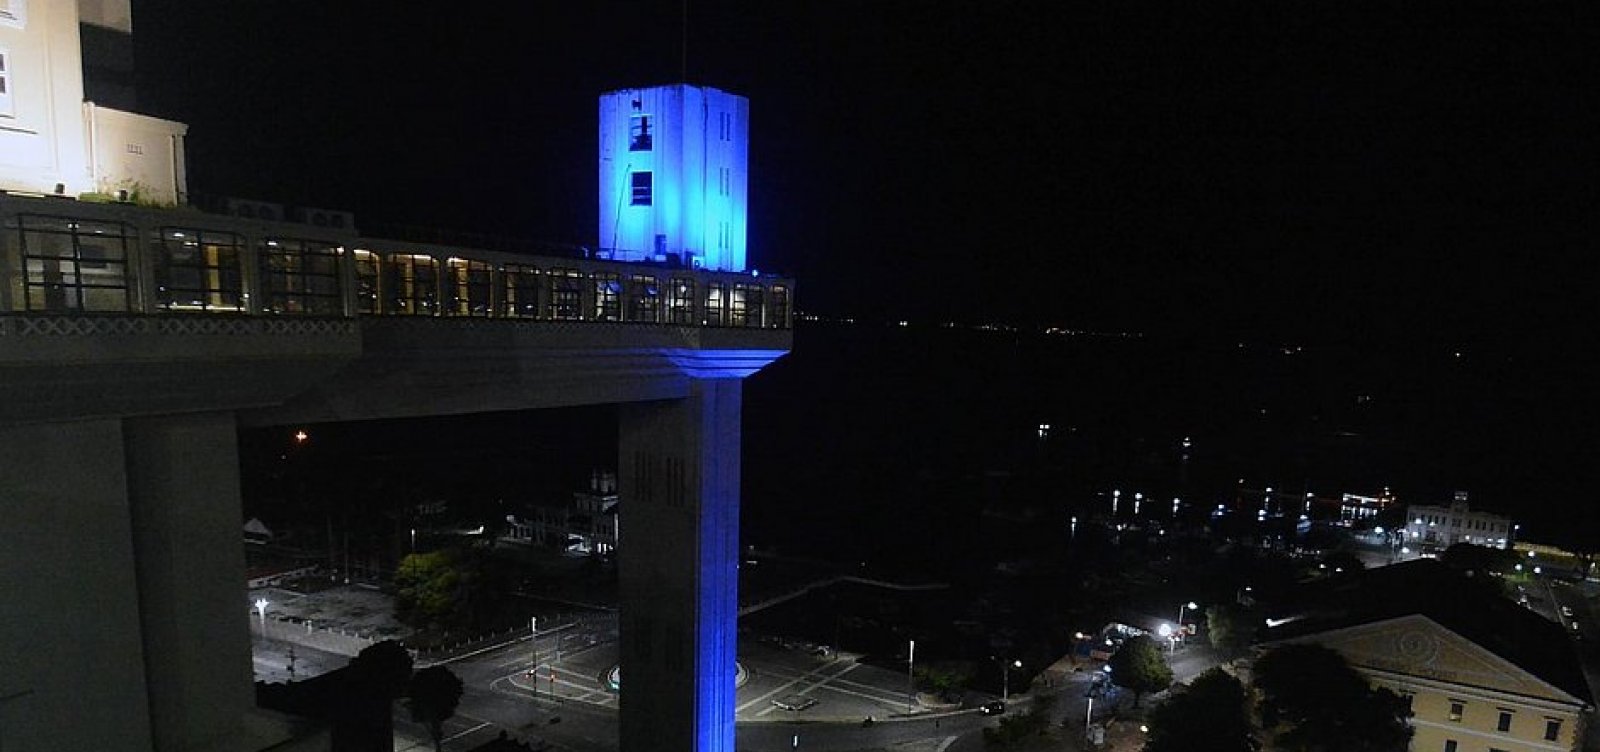 Pontos turísticos de Salvador recebem iluminação azul em homenagem ao autismo